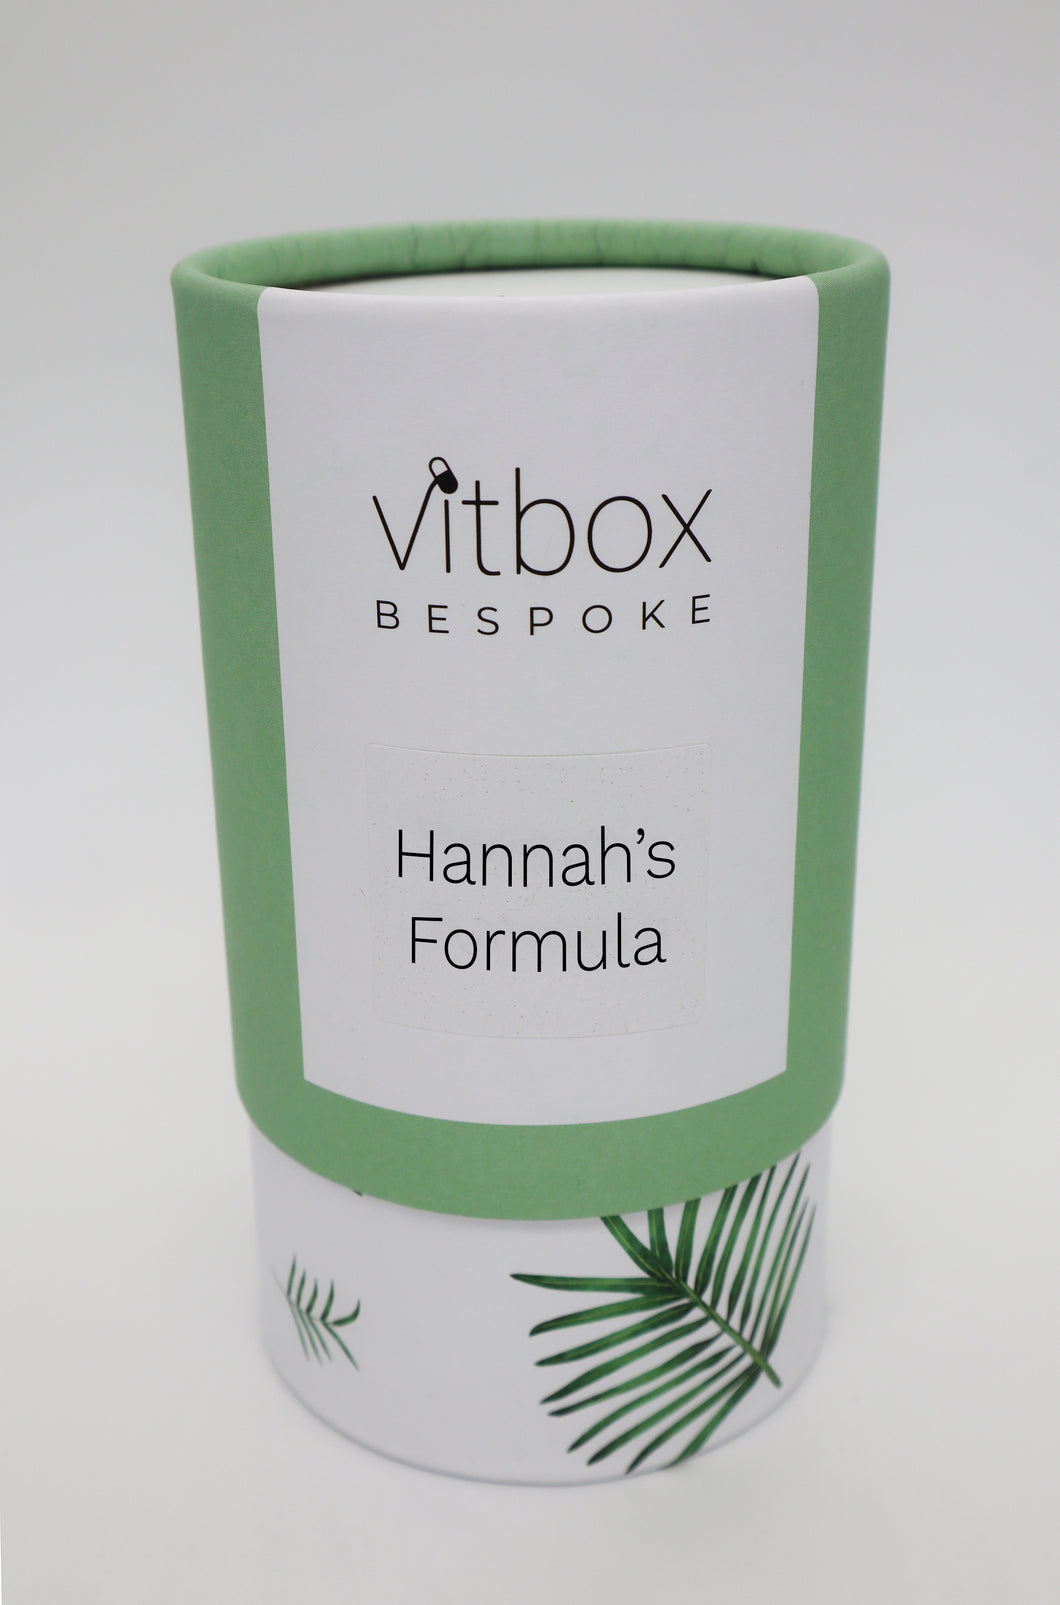 Hannah's Vitbox Bespoke